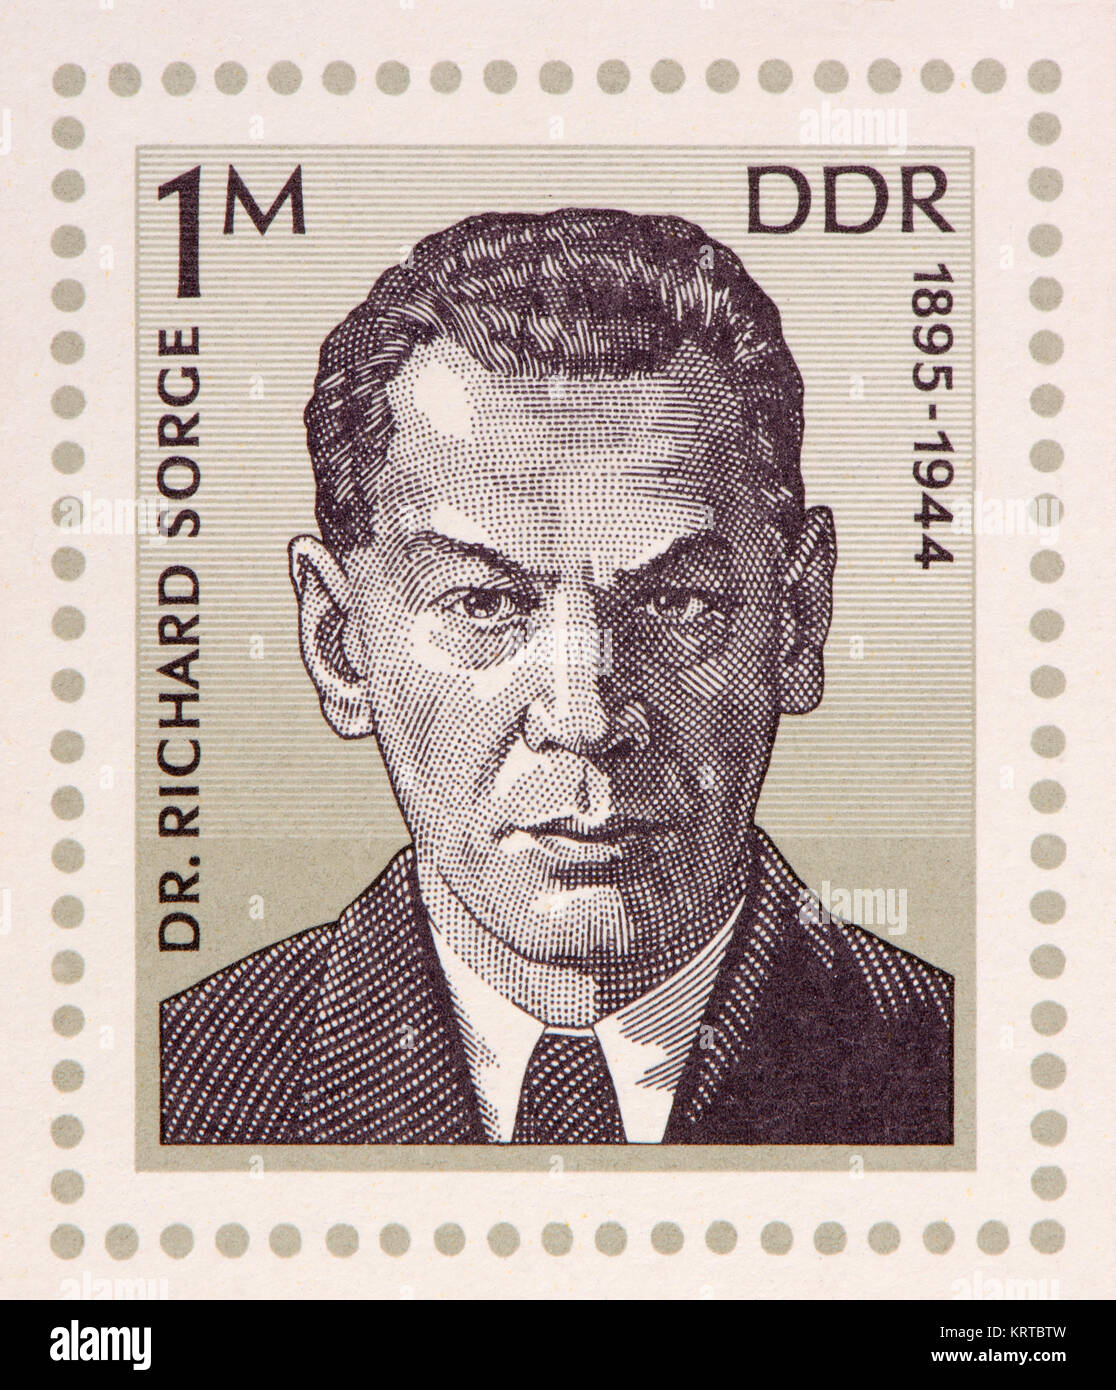 Ddr (DDR) Briefmarke (1976) auf einem minisheet: Richard Sorge (1895-1944), sowjetische Militär Intelligence Officer, undercover Journalist. "Held Stockfoto